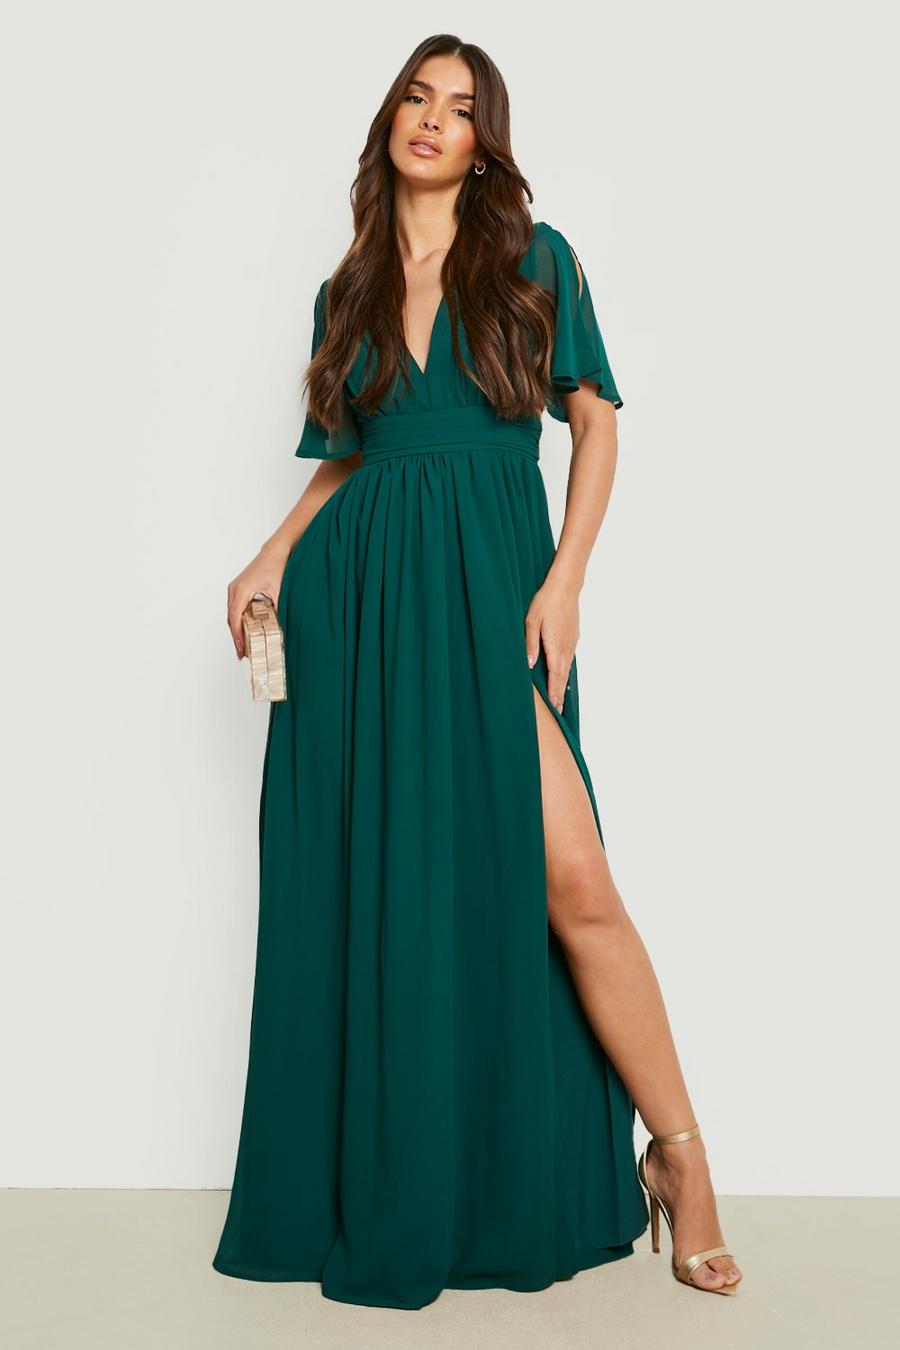 Emerald Chiffon Plunge Ruched Maxi Dress